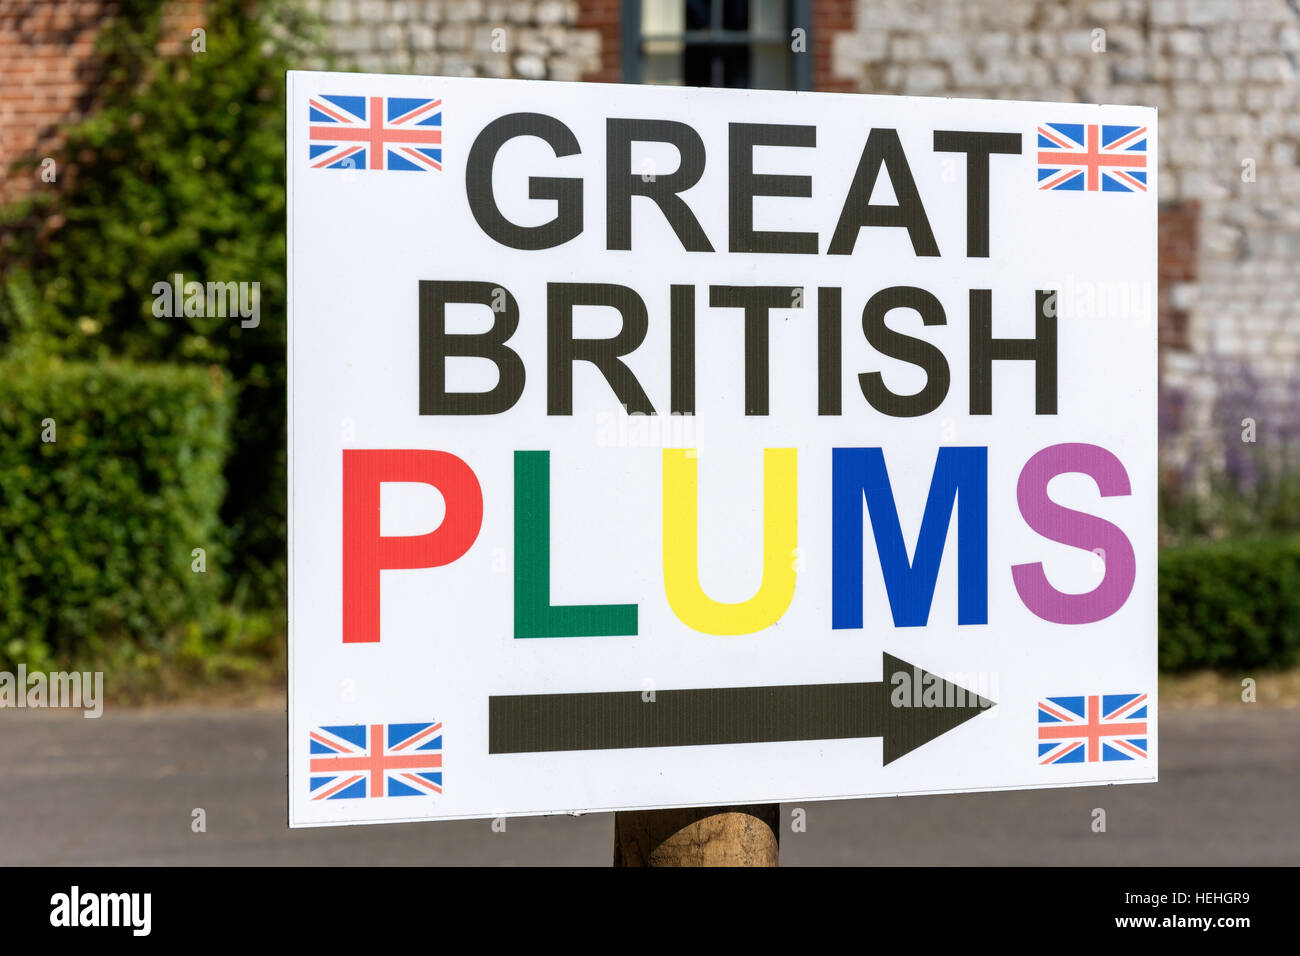 Melden Sie große britische Pflaumen, Burnham Overy Stadt, Norfolk, England, Vereinigtes Königreich Stockfoto